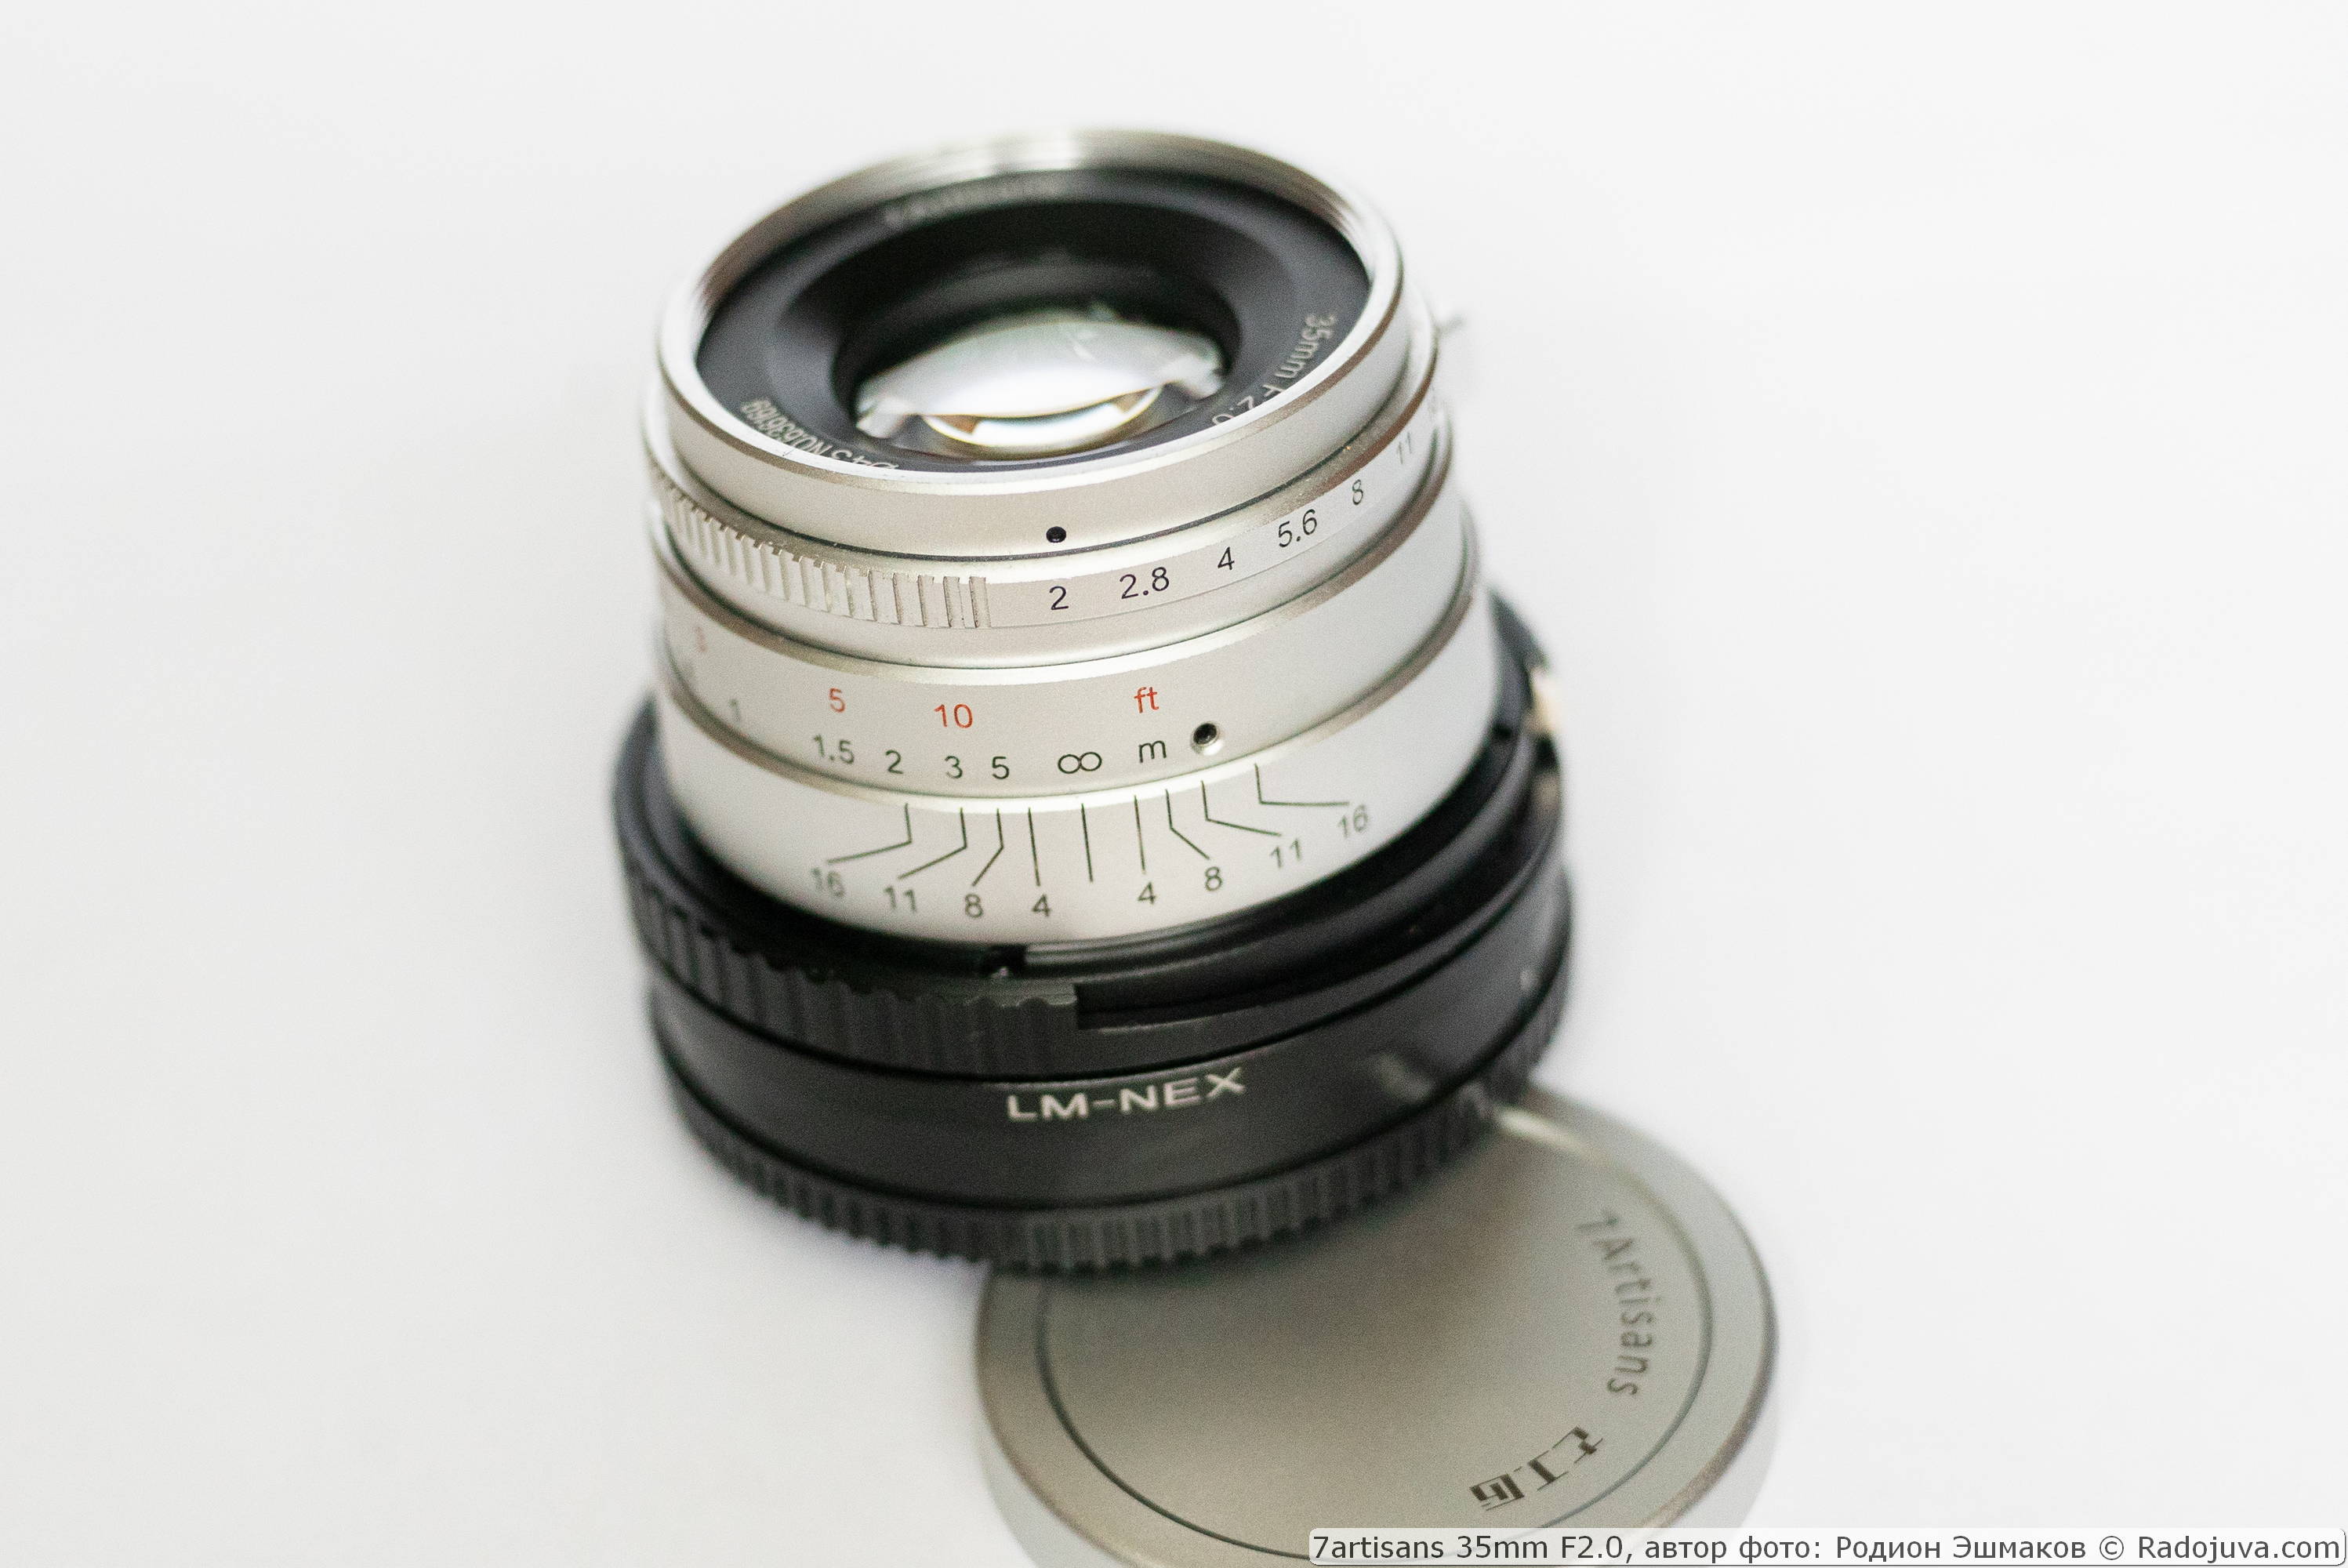 Объектив 7artisans 35/2 с адаптером-геликоидом Leica M – NEX при фокусировке на бесконечность.